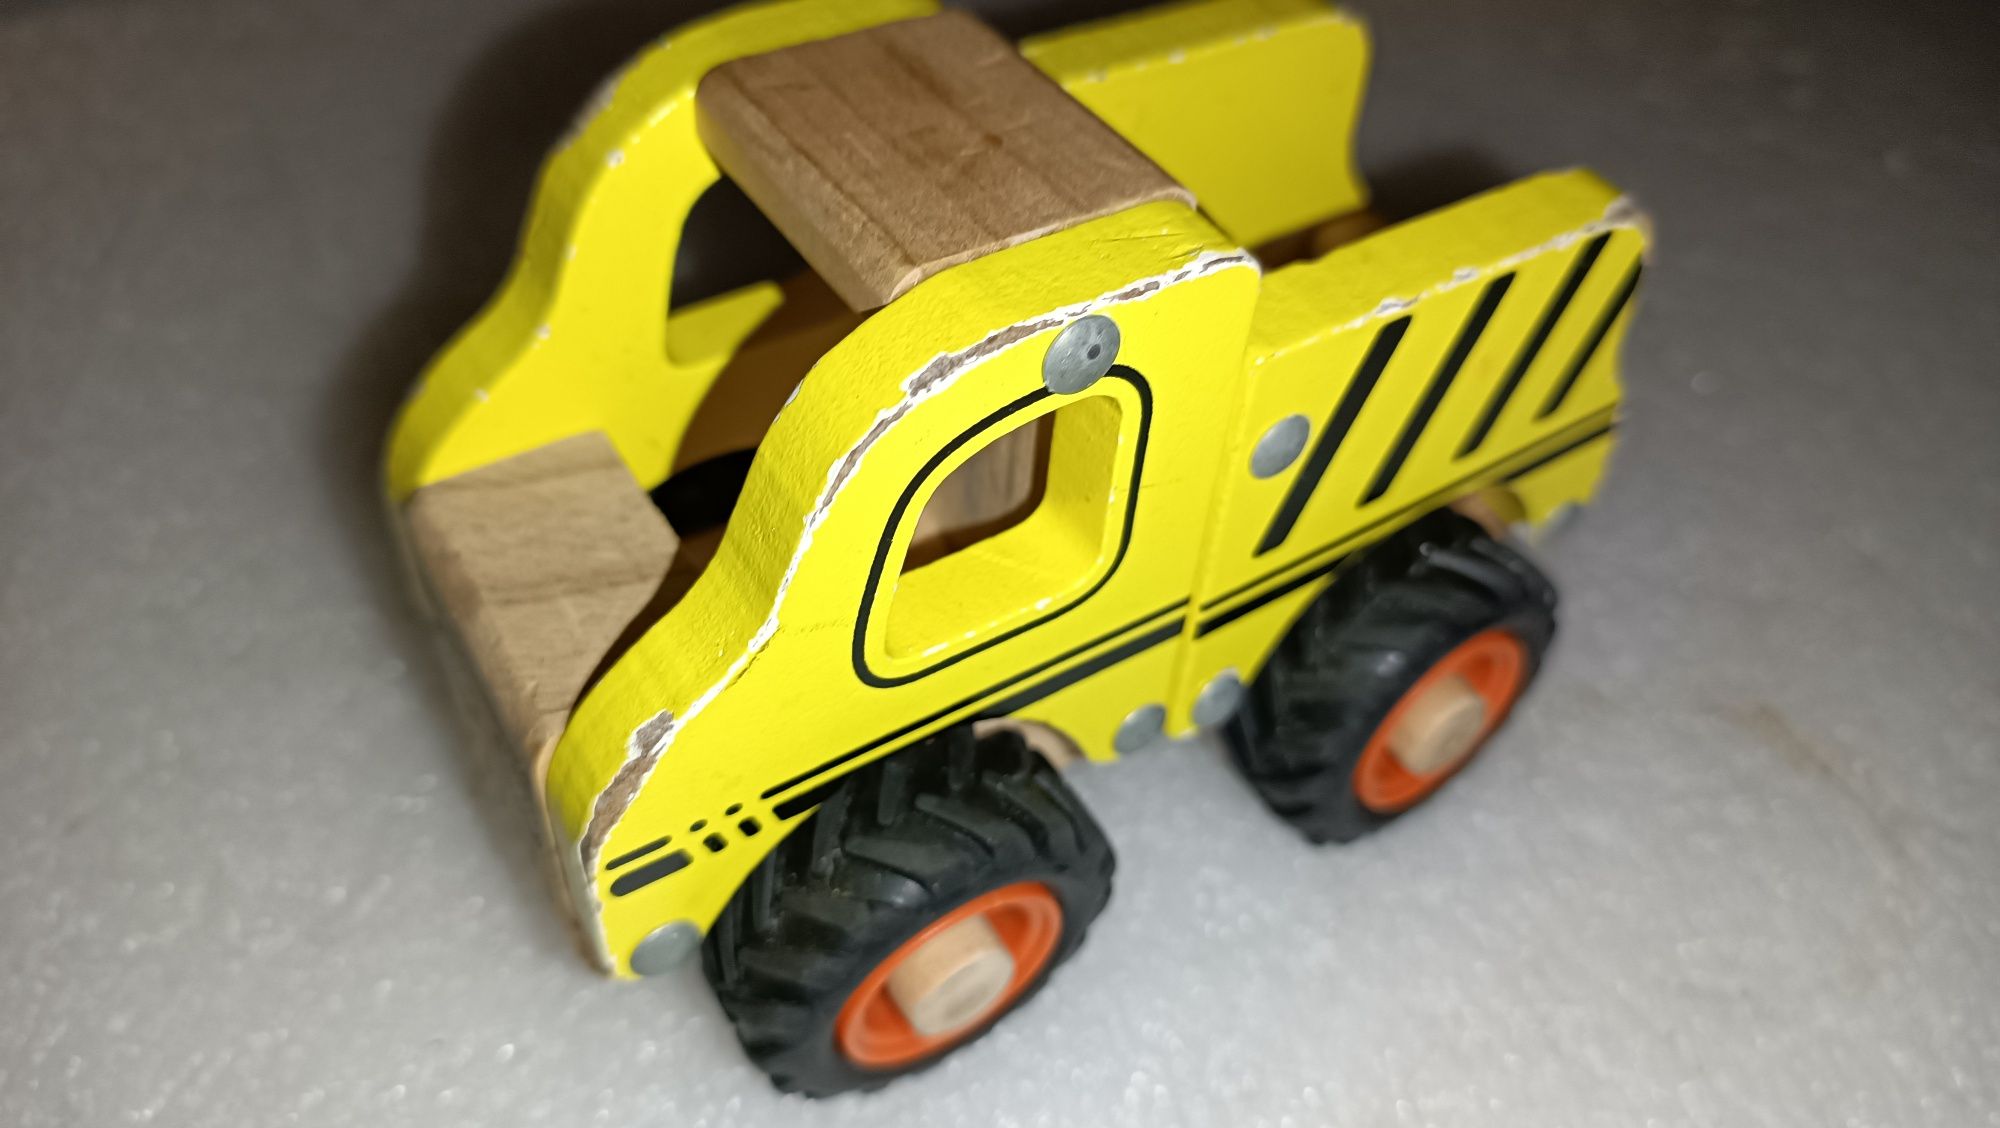 Brinquedo Camião em madeira da marca Legner